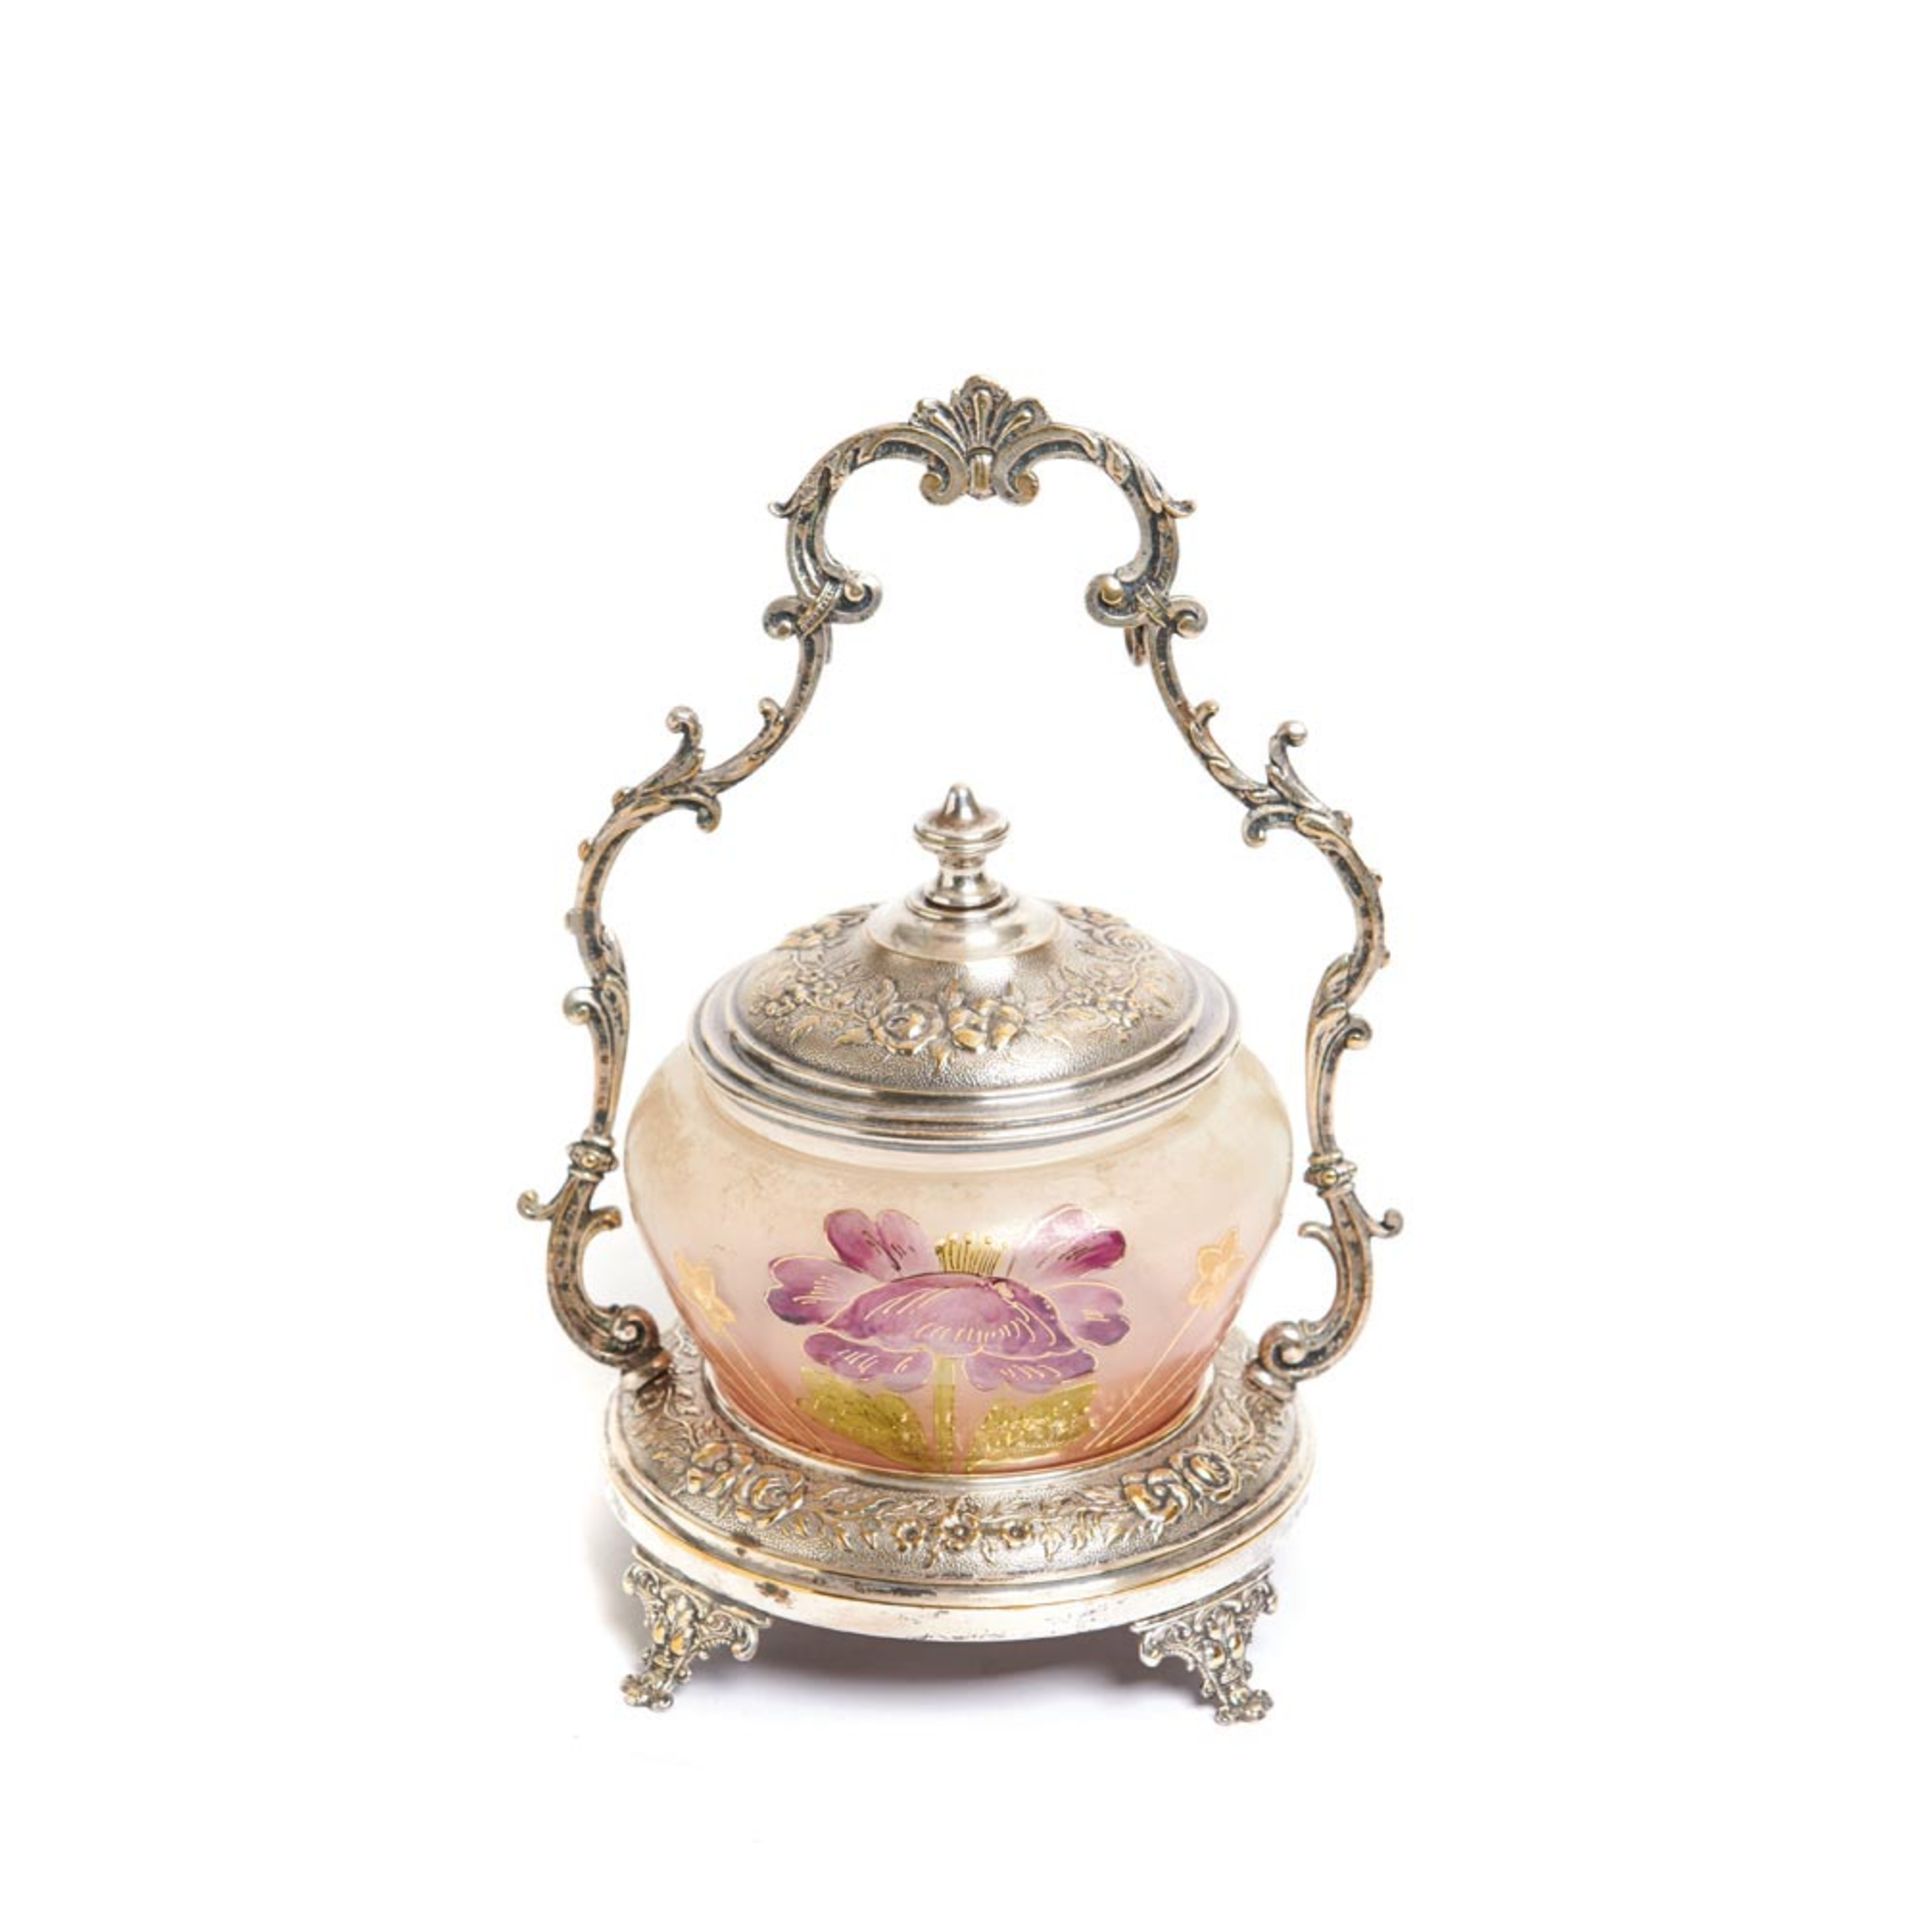 Galletero Art Nouveau en cristal mateado y esmaltado con decoración floral, tapa y soporte en